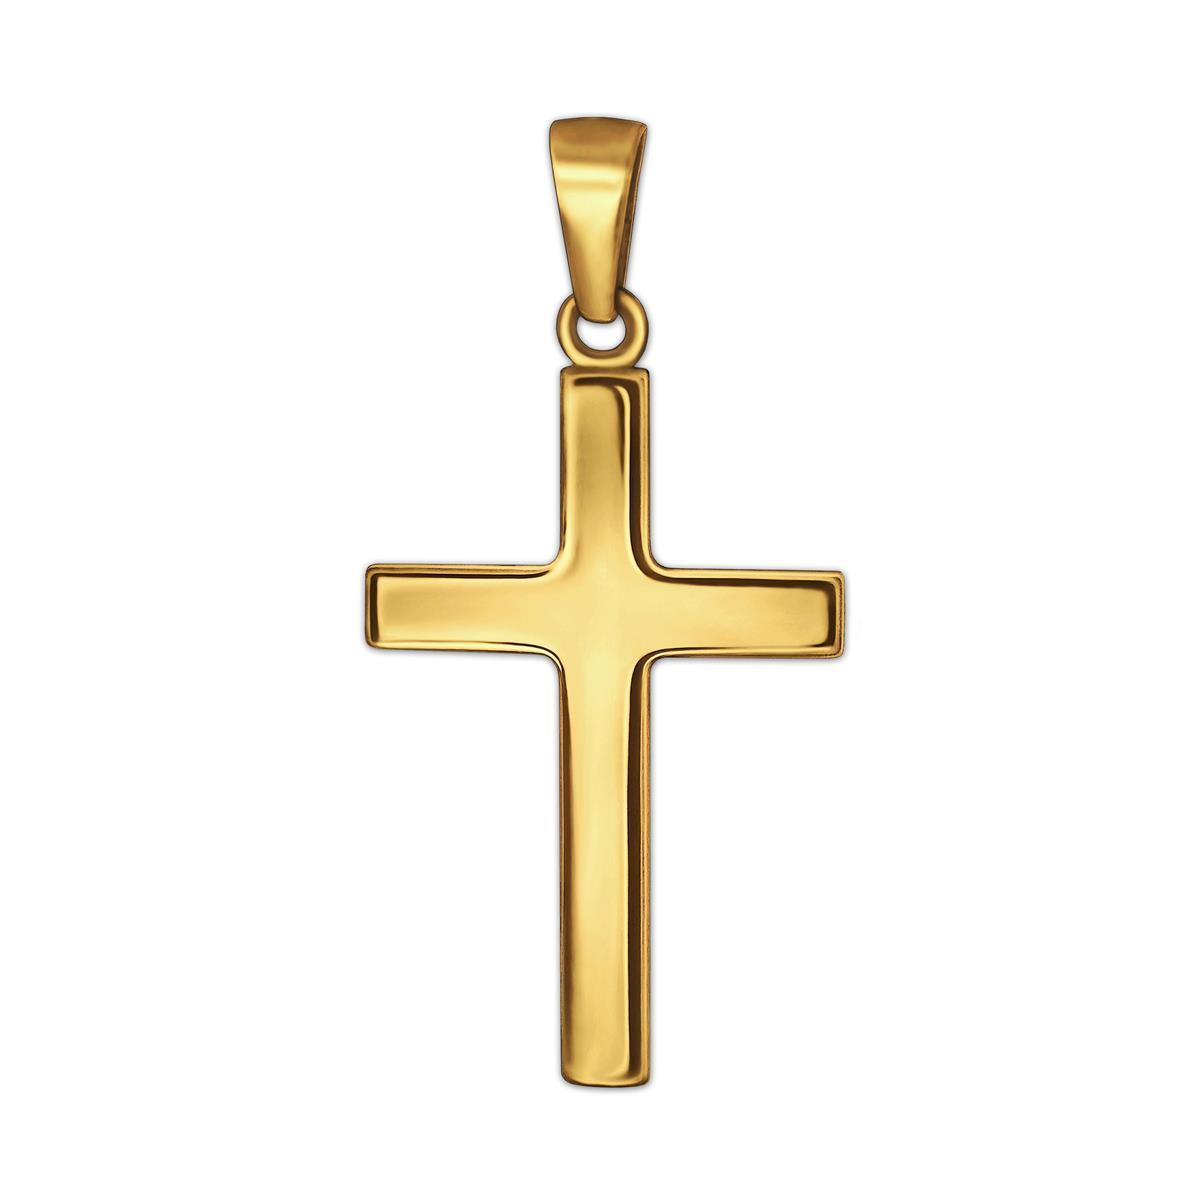 Goldener Anhänger kleines Kreuz 18 mm schlicht glänzend 333 GOLD 8 KARAT